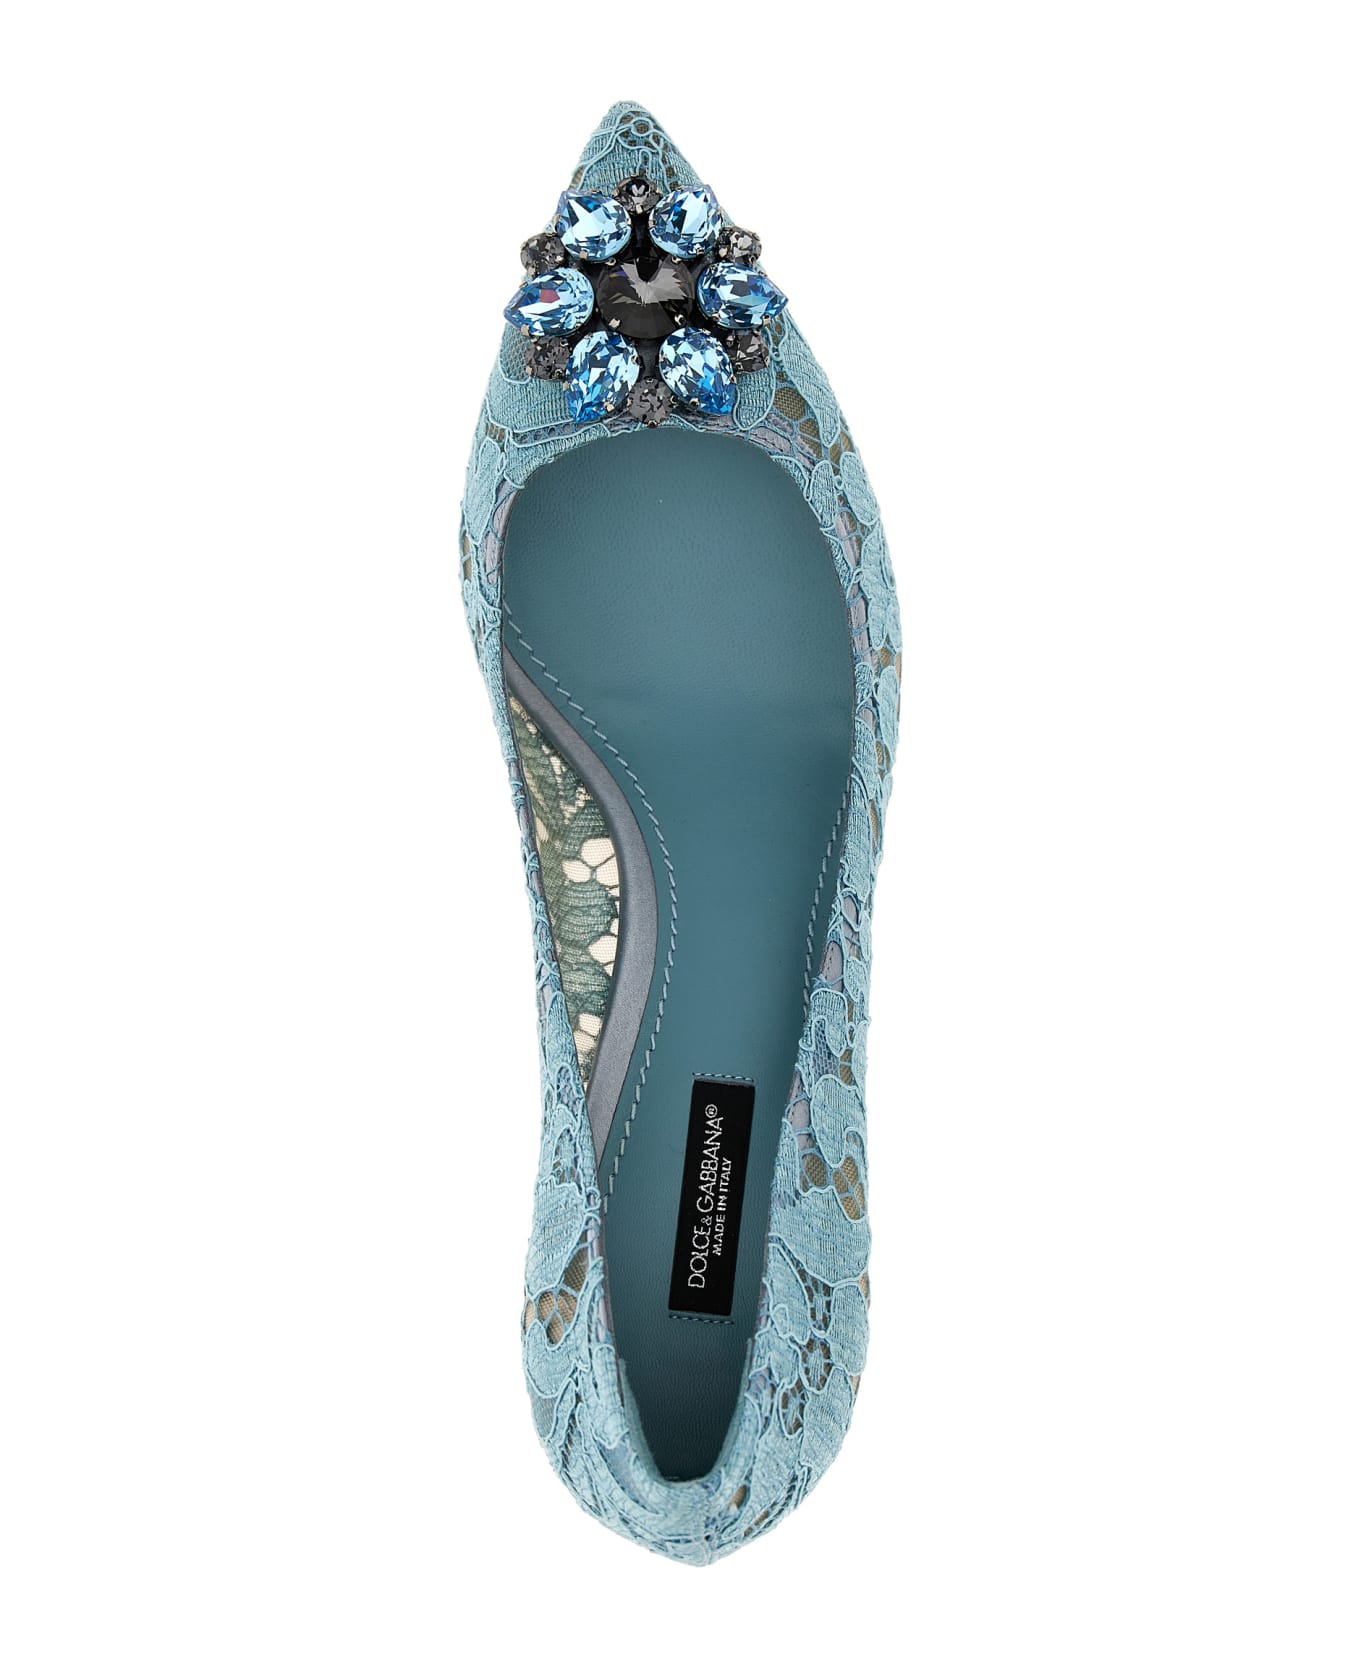 Dolce & Gabbana Lace Pumps - Light Blue